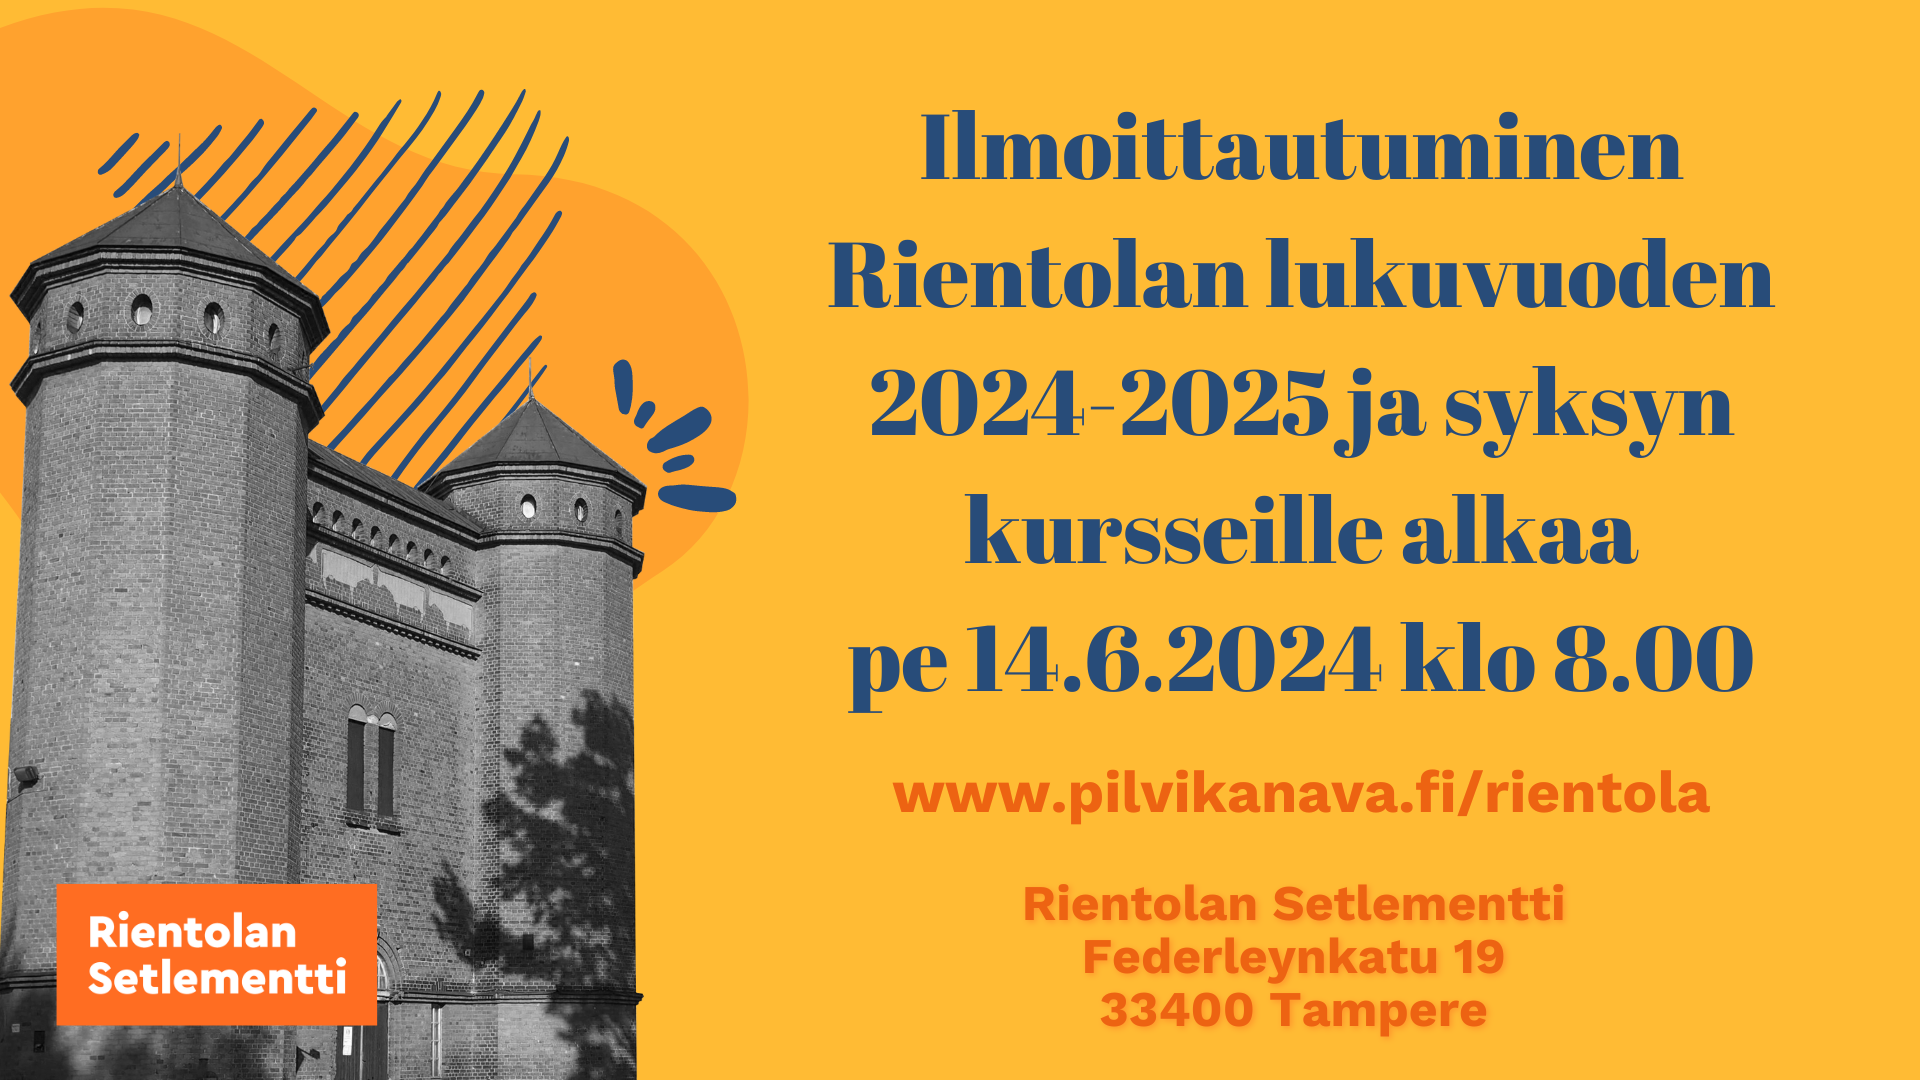 Ilmoittautuminen Rientolan lukukauden 2024-2025 ja syyskauden kursseille alkaa 14.6.2024!